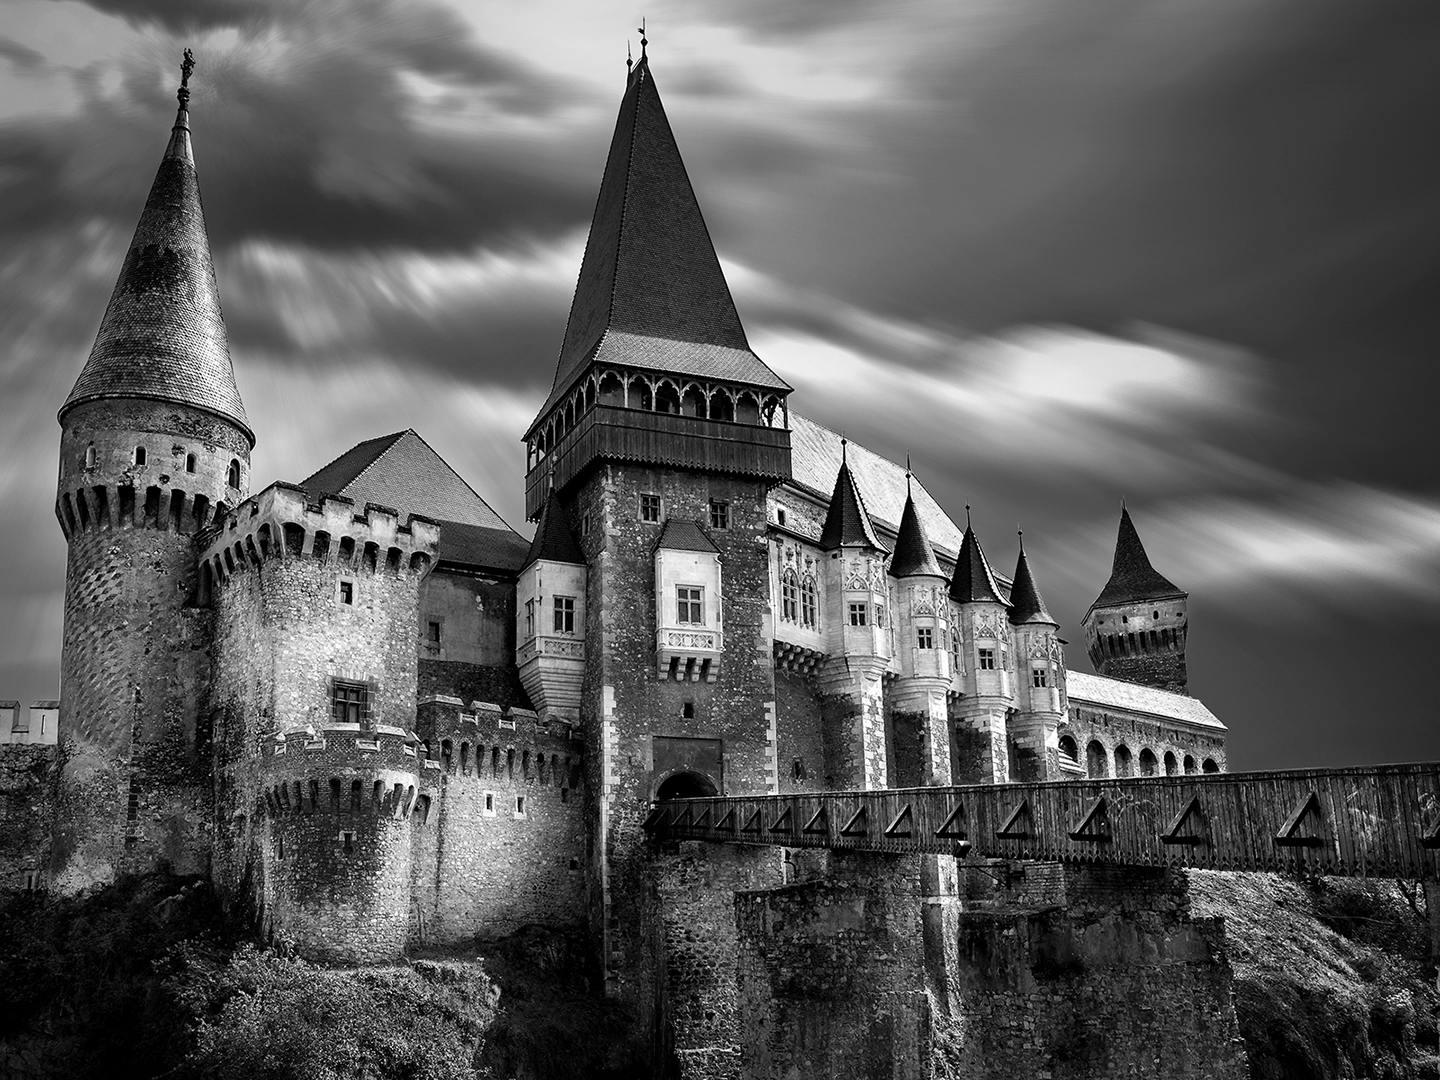 Corvin's Castle in Transylvania